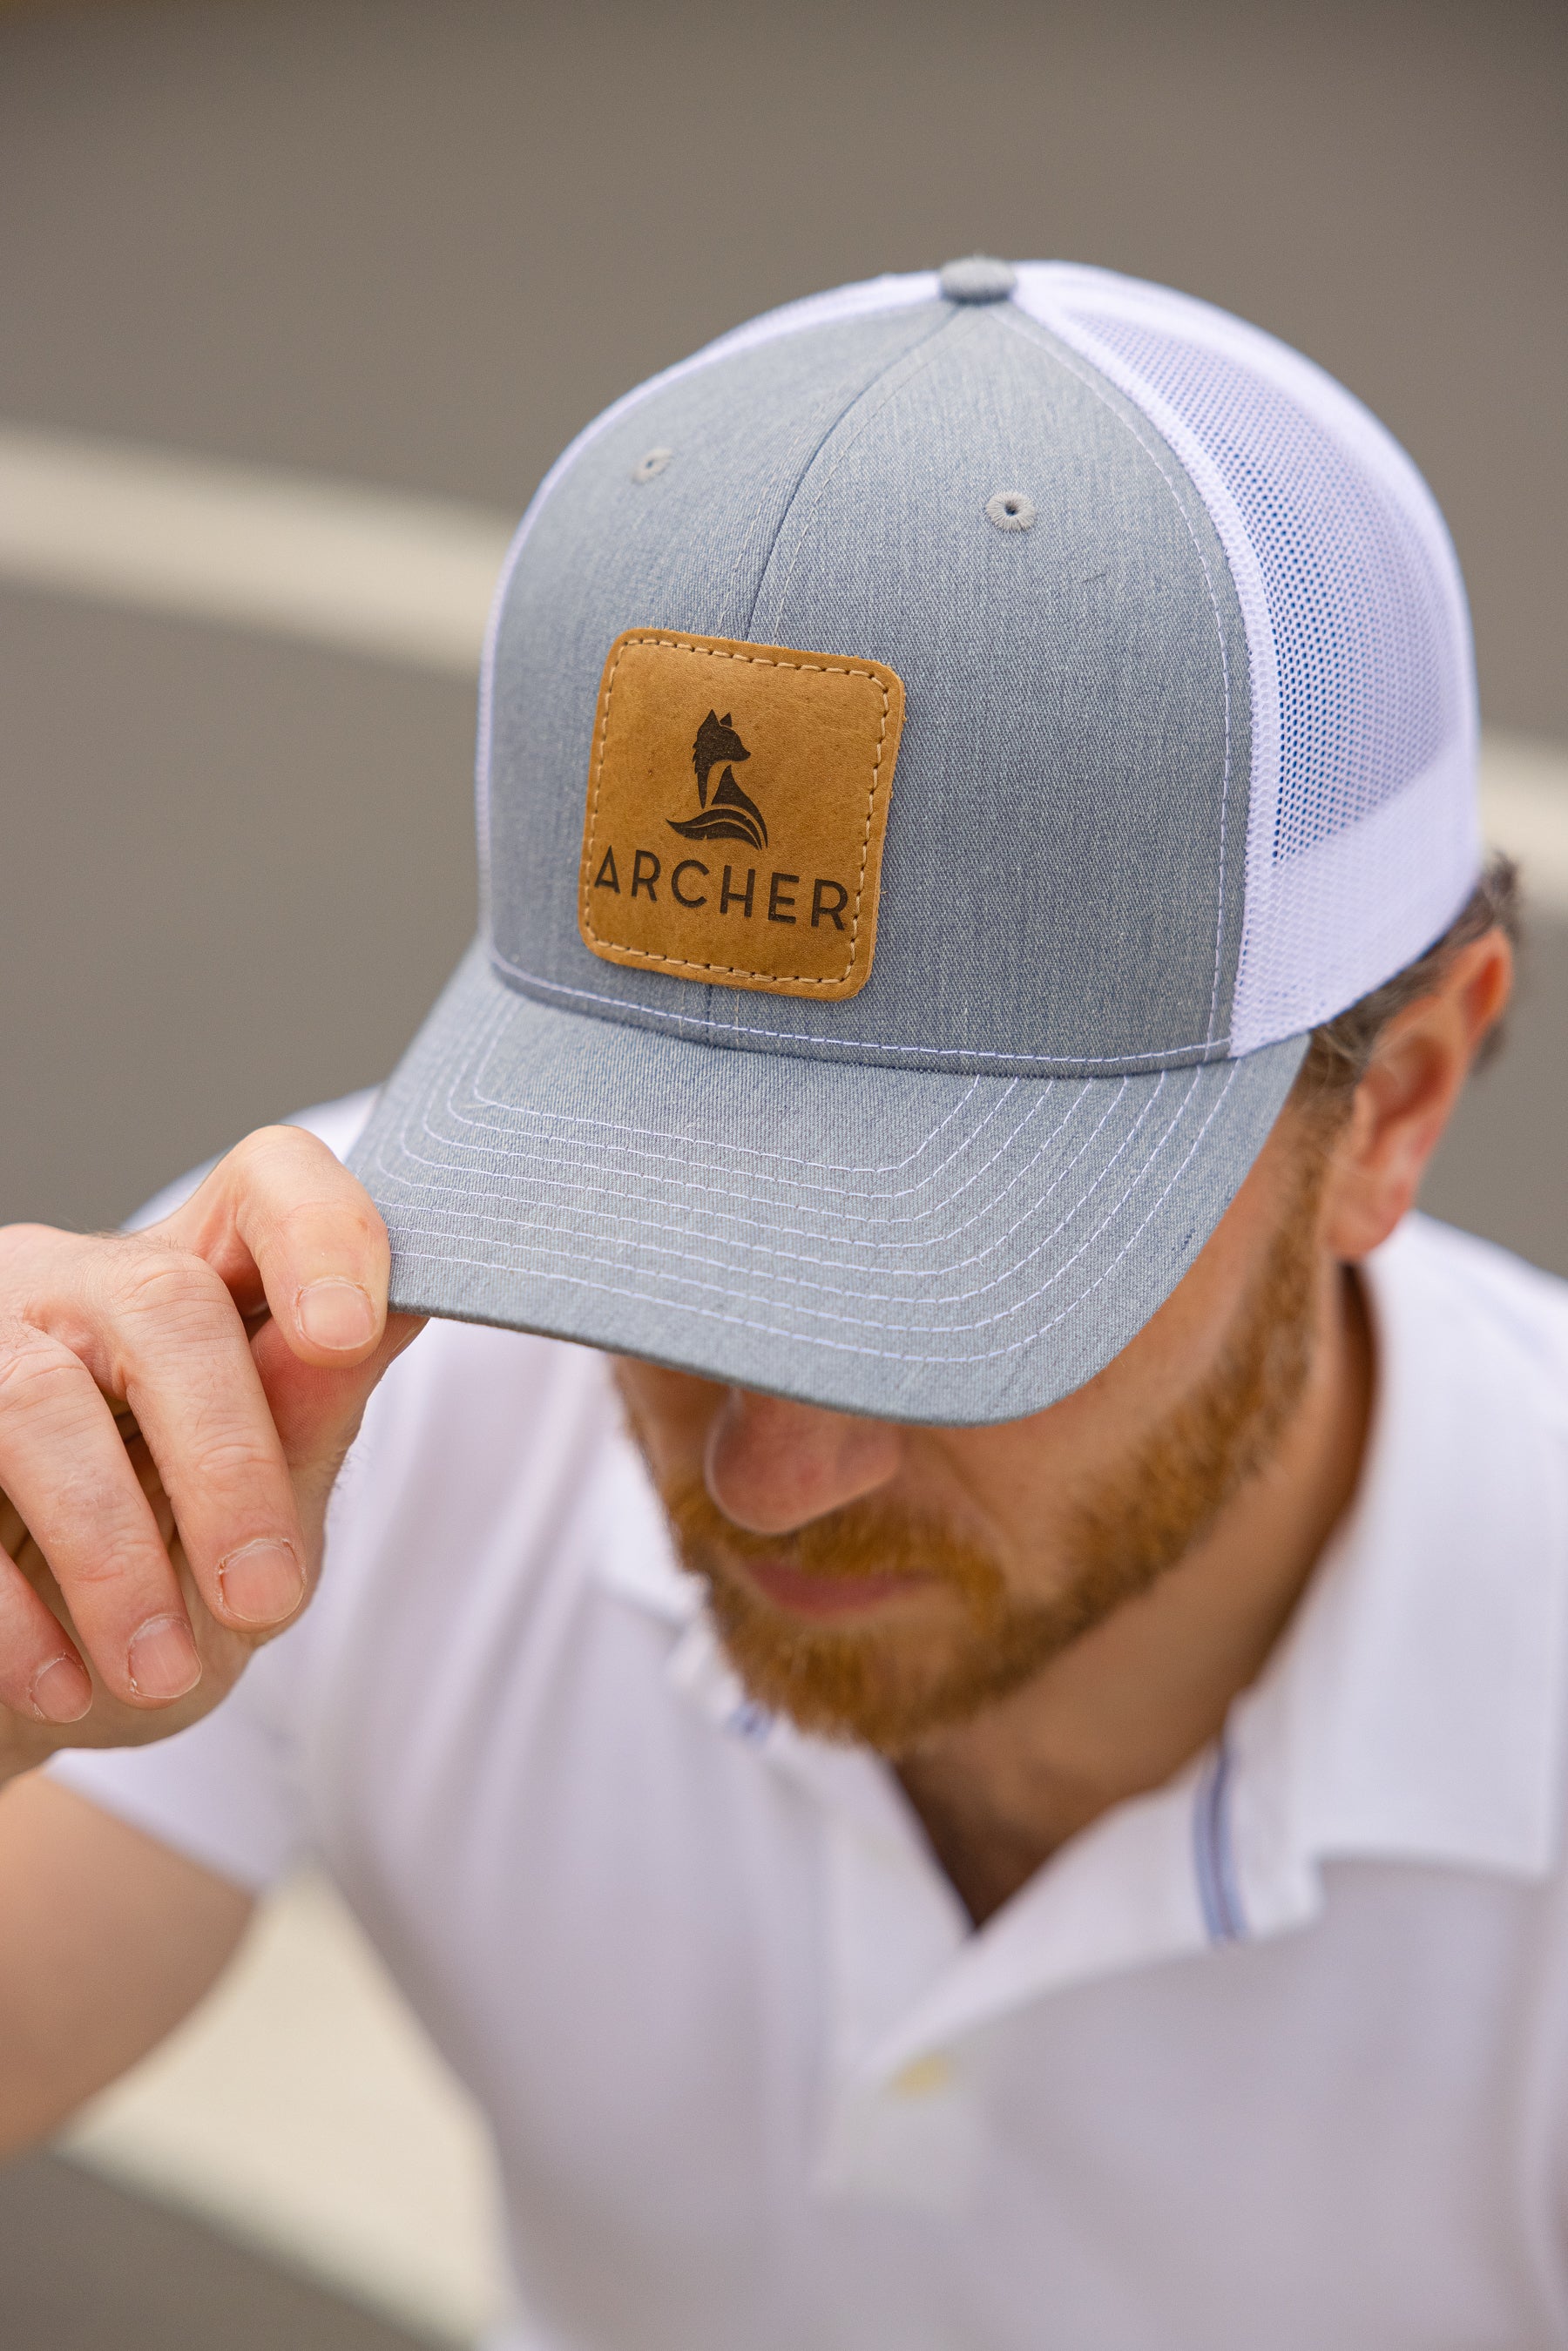 The Archer Hat – Archer Apparel